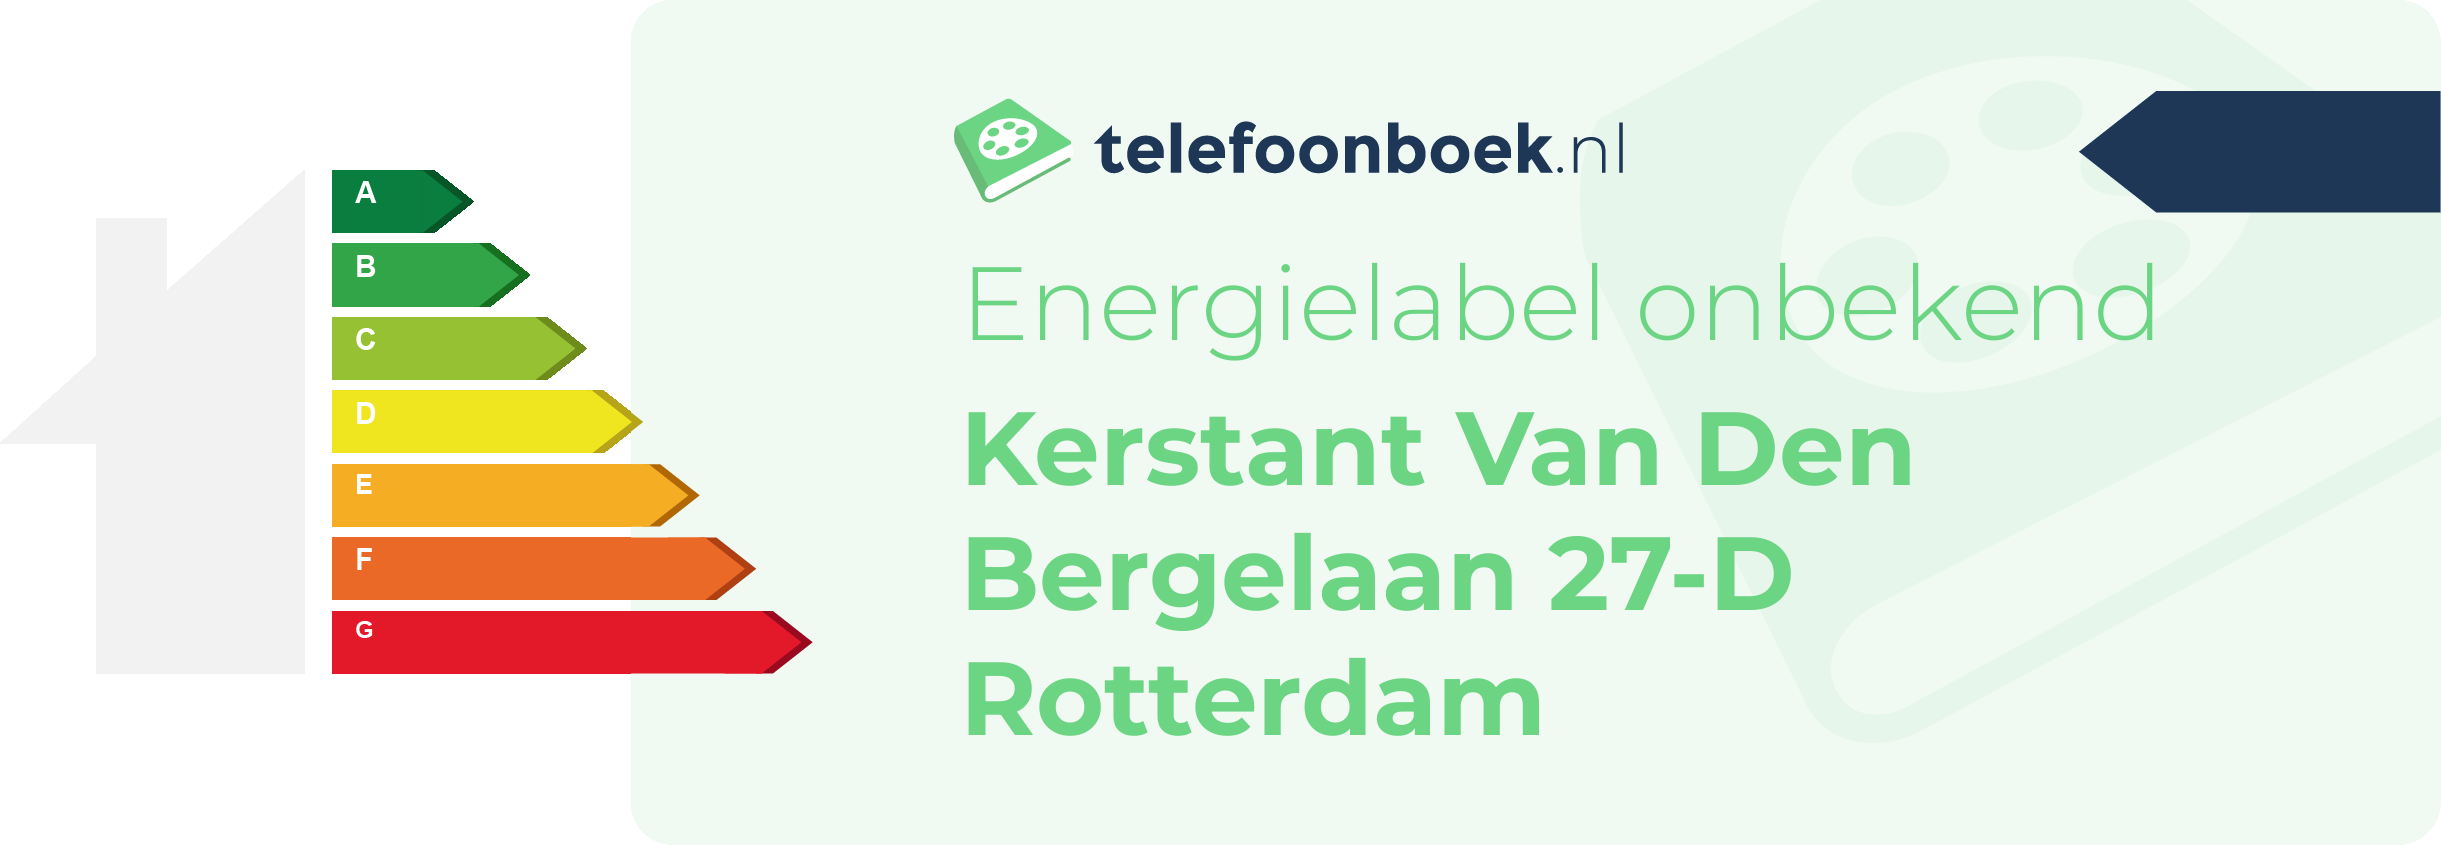 Energielabel Kerstant Van Den Bergelaan 27-D Rotterdam